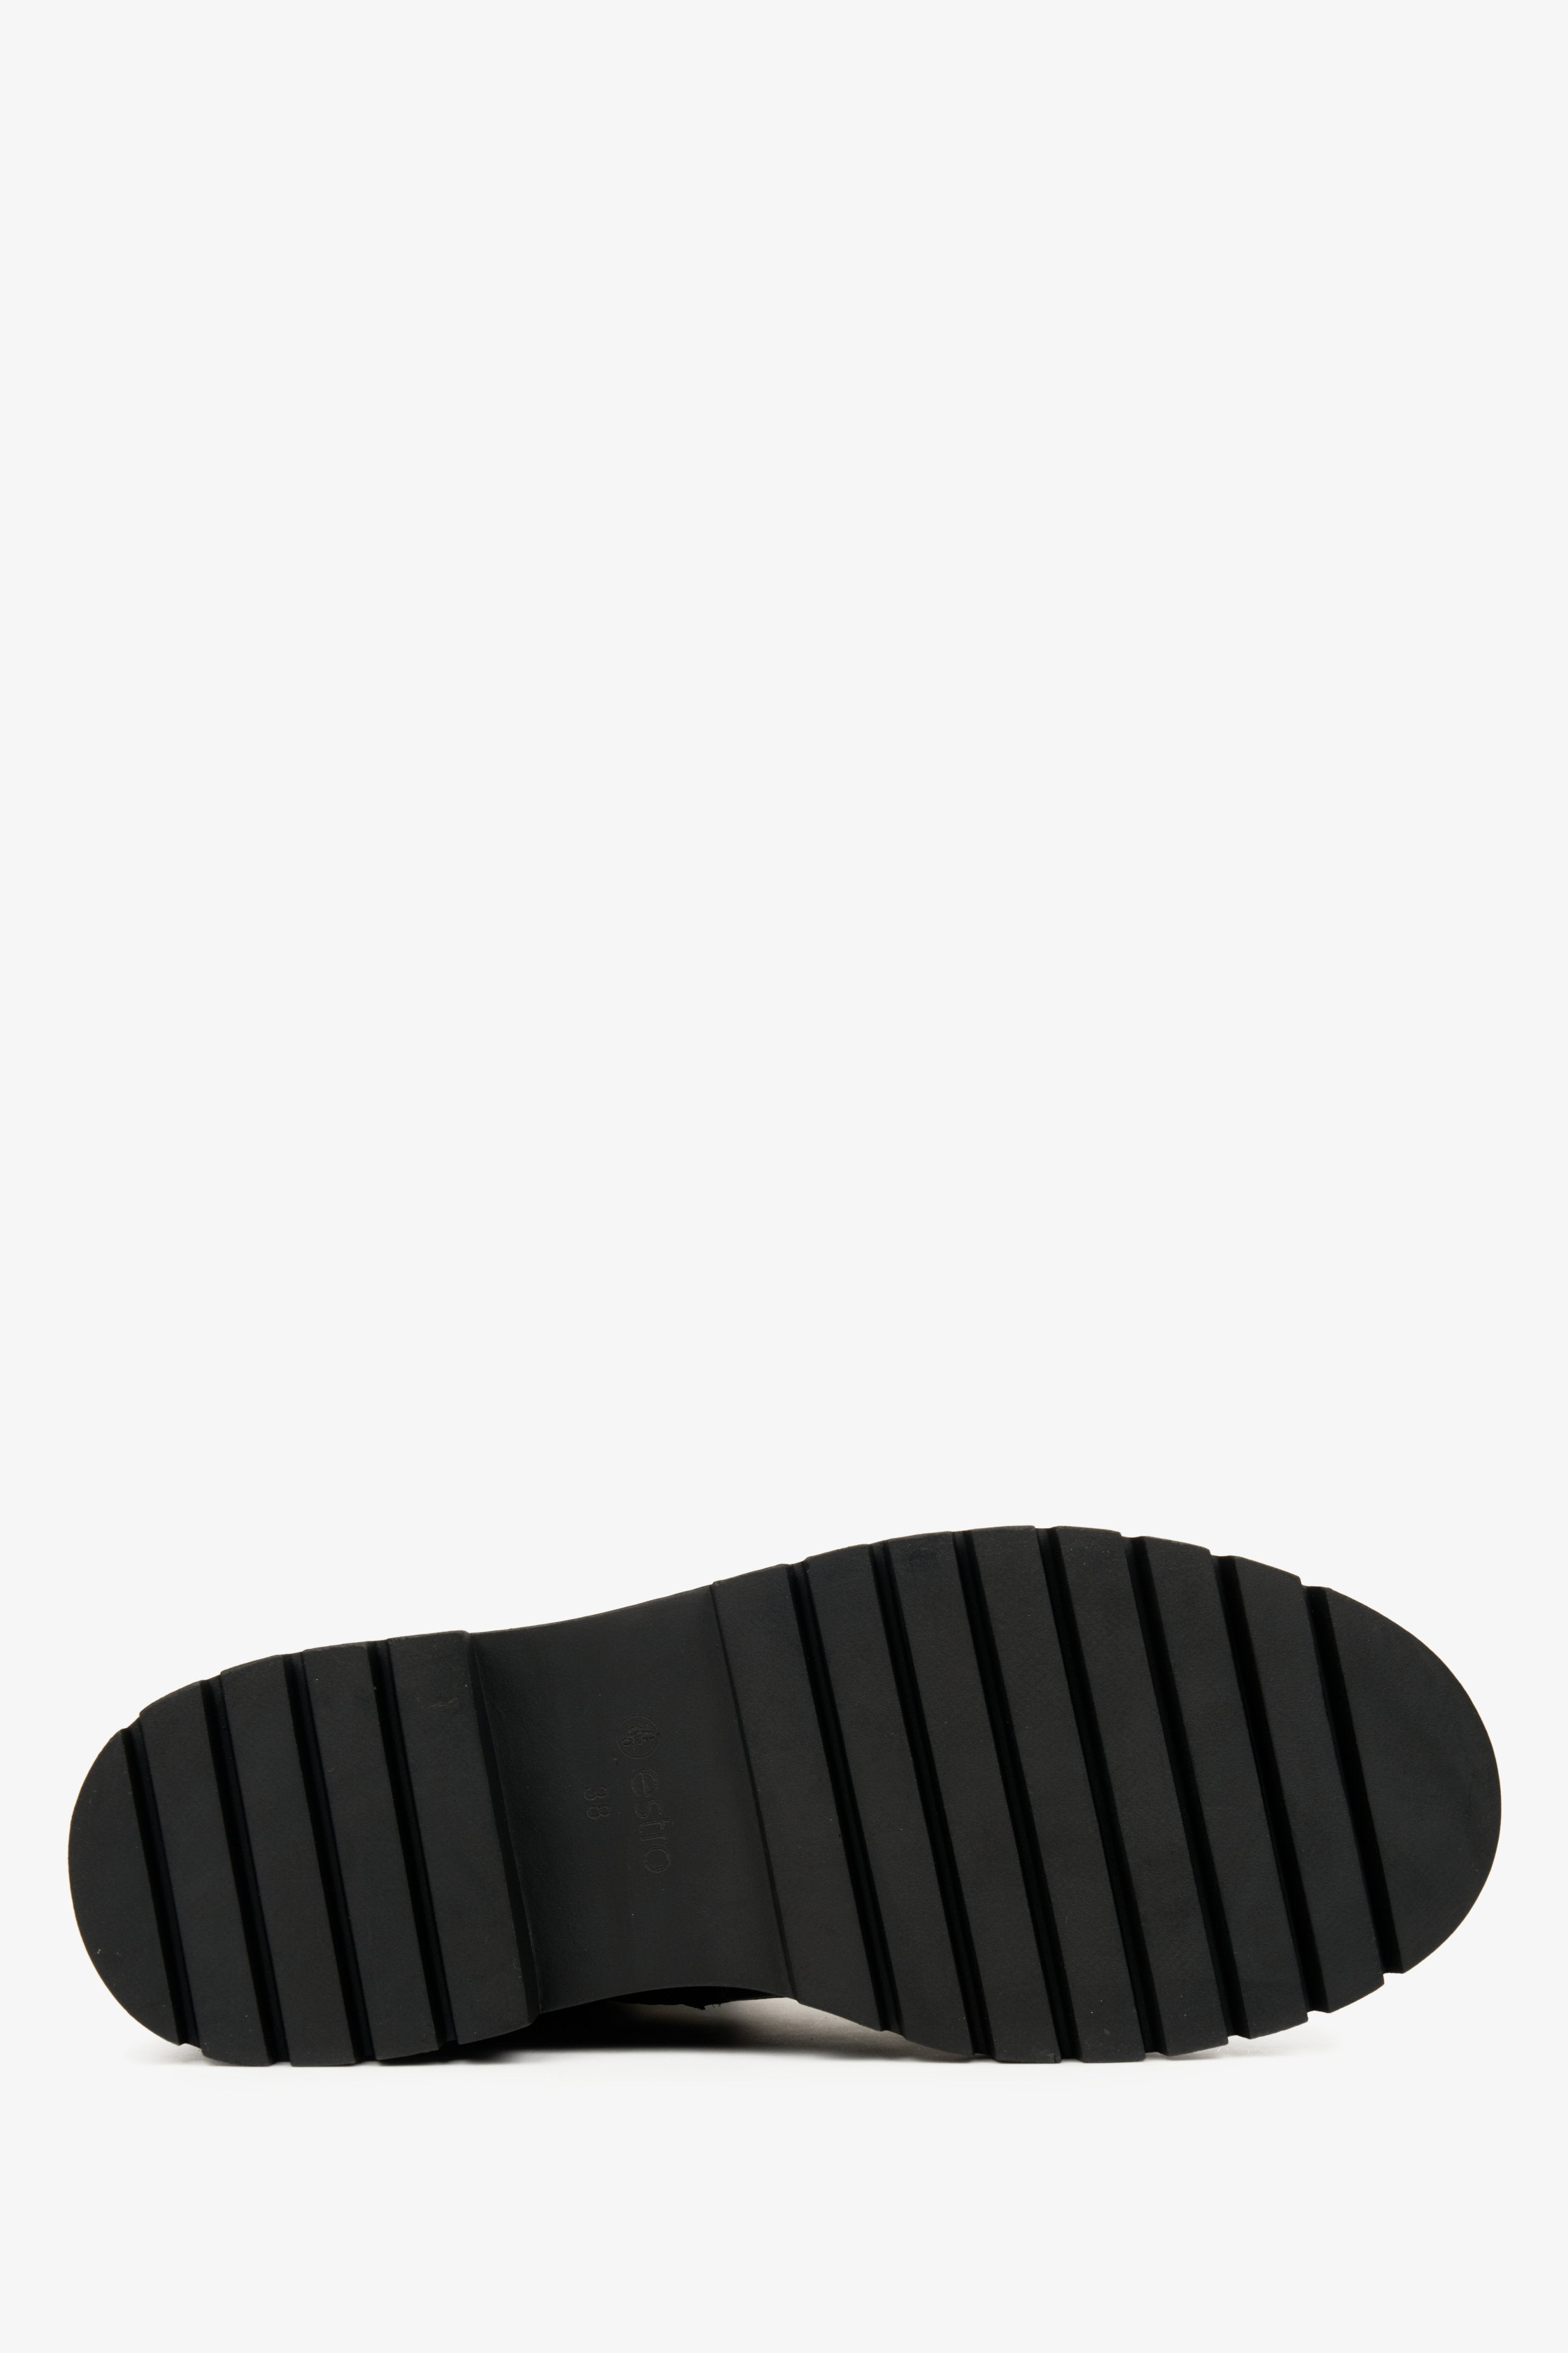 Damskie, czarne botki na zimę Estro - zbliżenie na podeszwę buta.